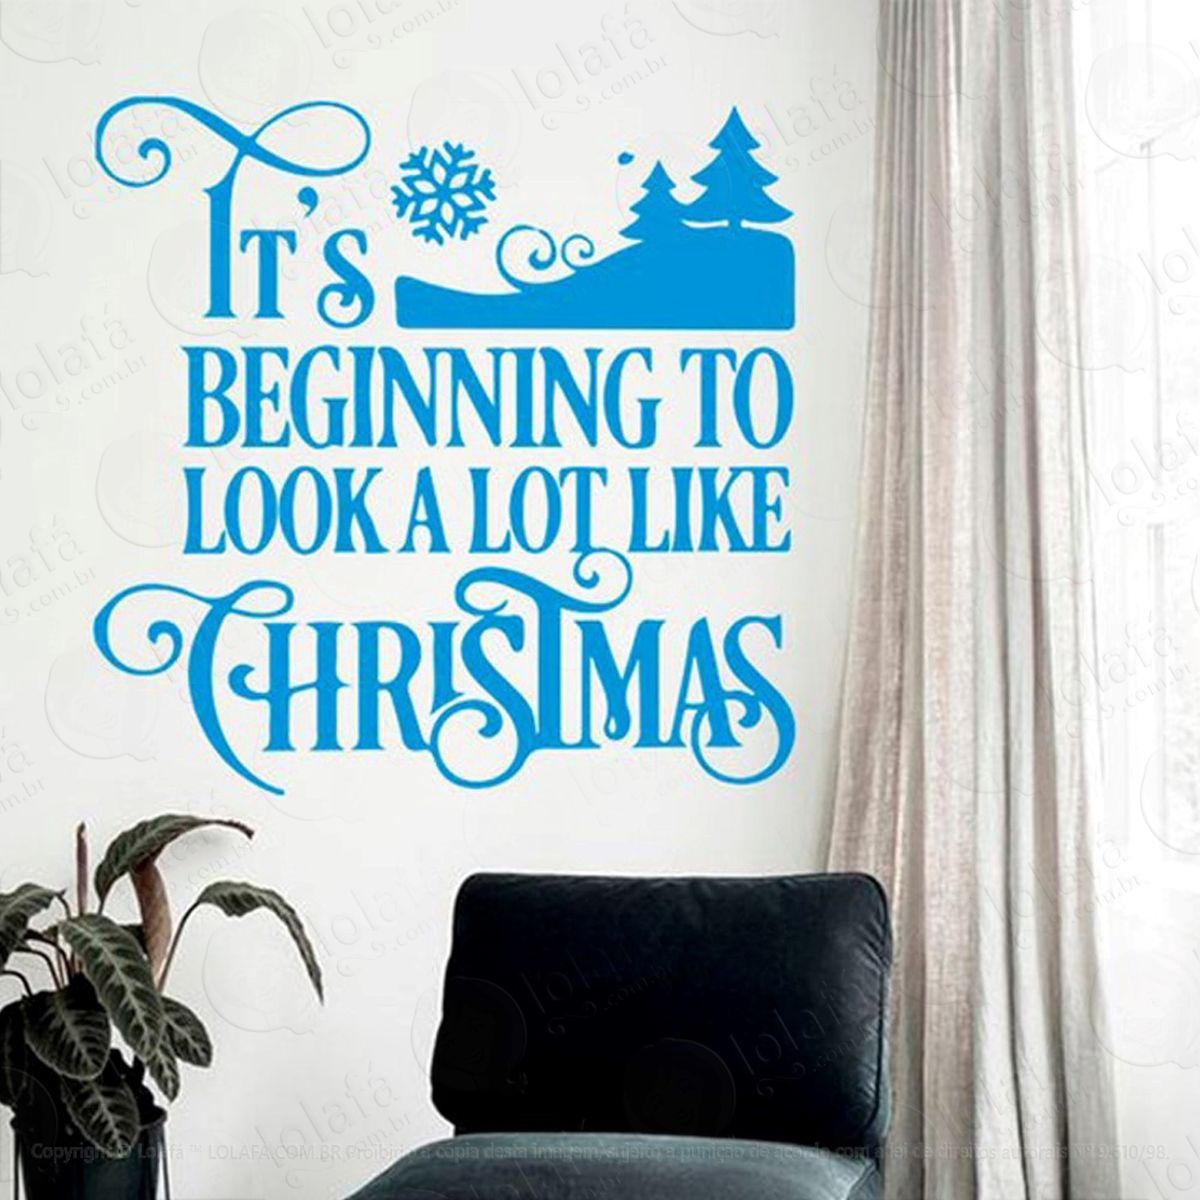 christmas adesivo de natal para vitrine, parede, porta de vidro - decoração natalina mod:132